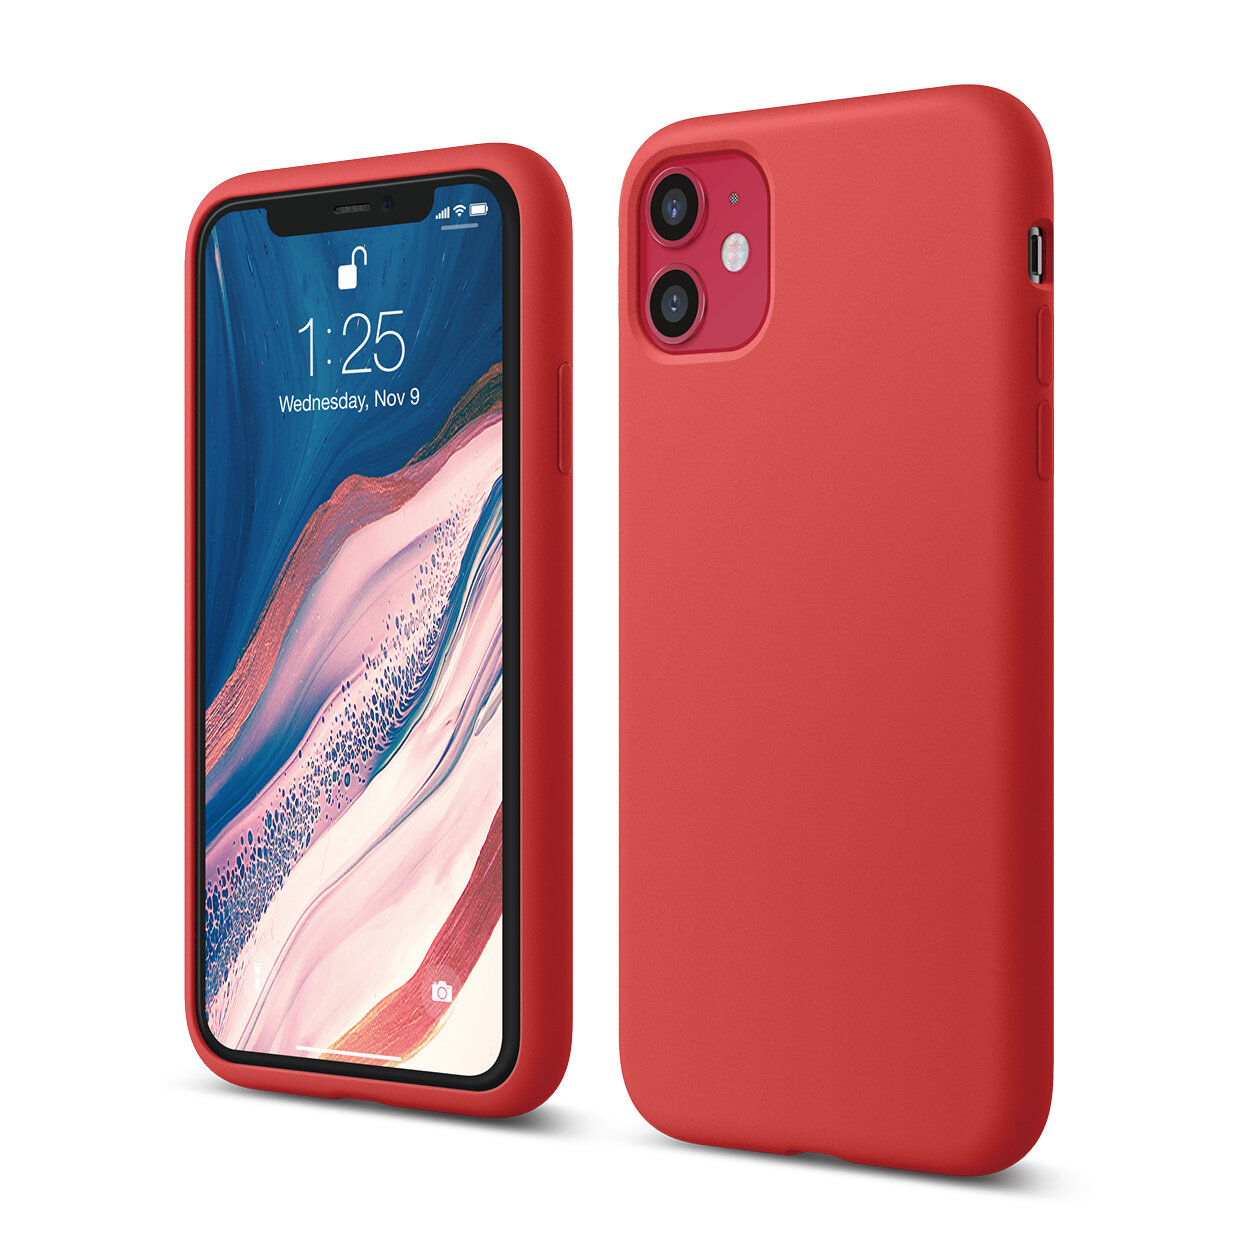 Red II phone case.